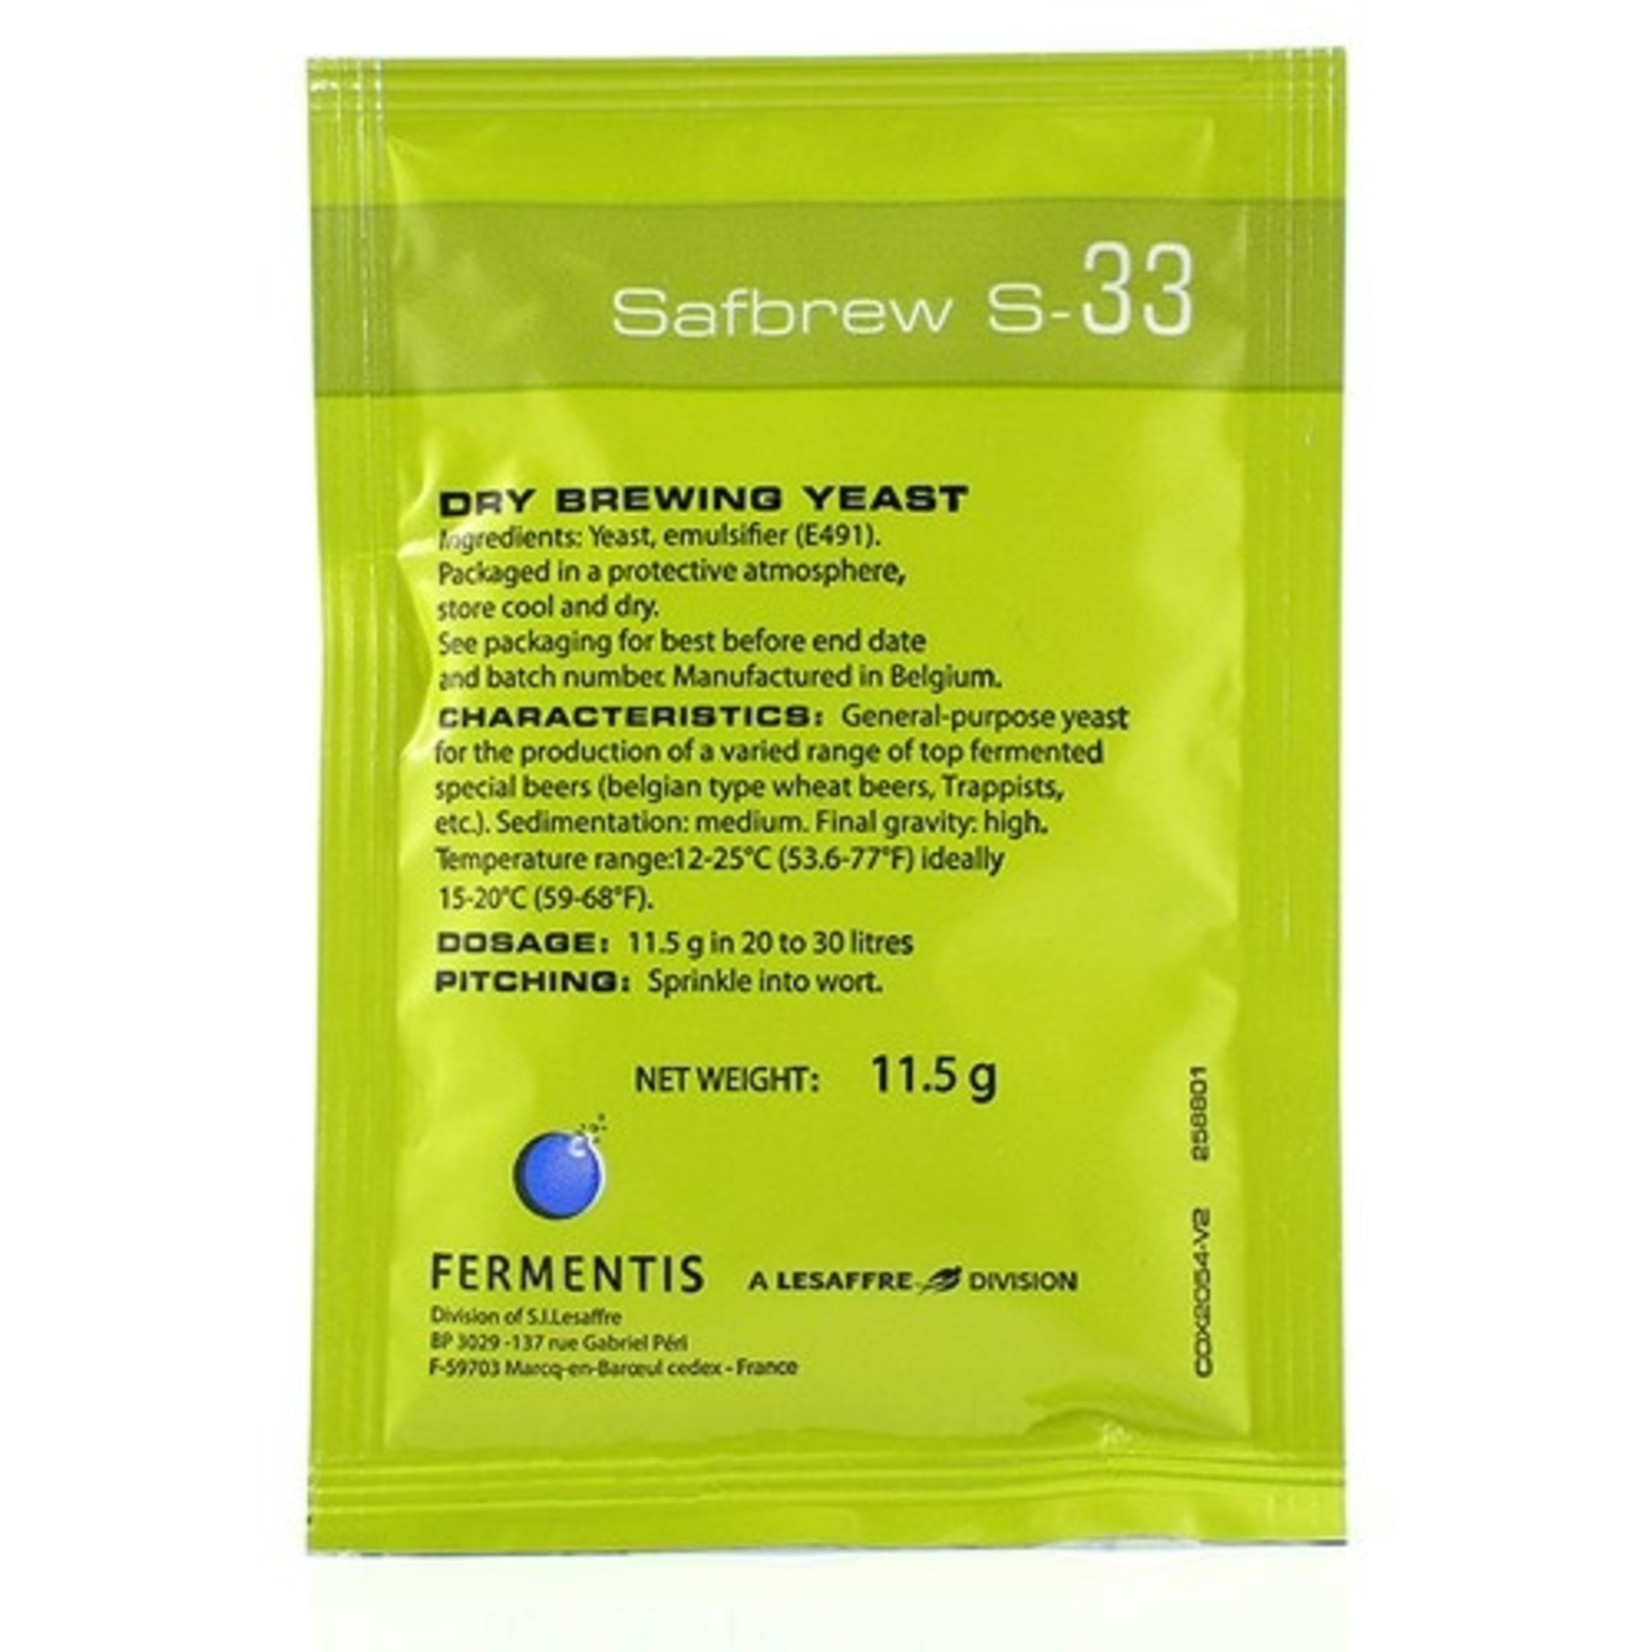 Fermentis Fermentis SafBrew Yeast S-33 11.5 g sachet